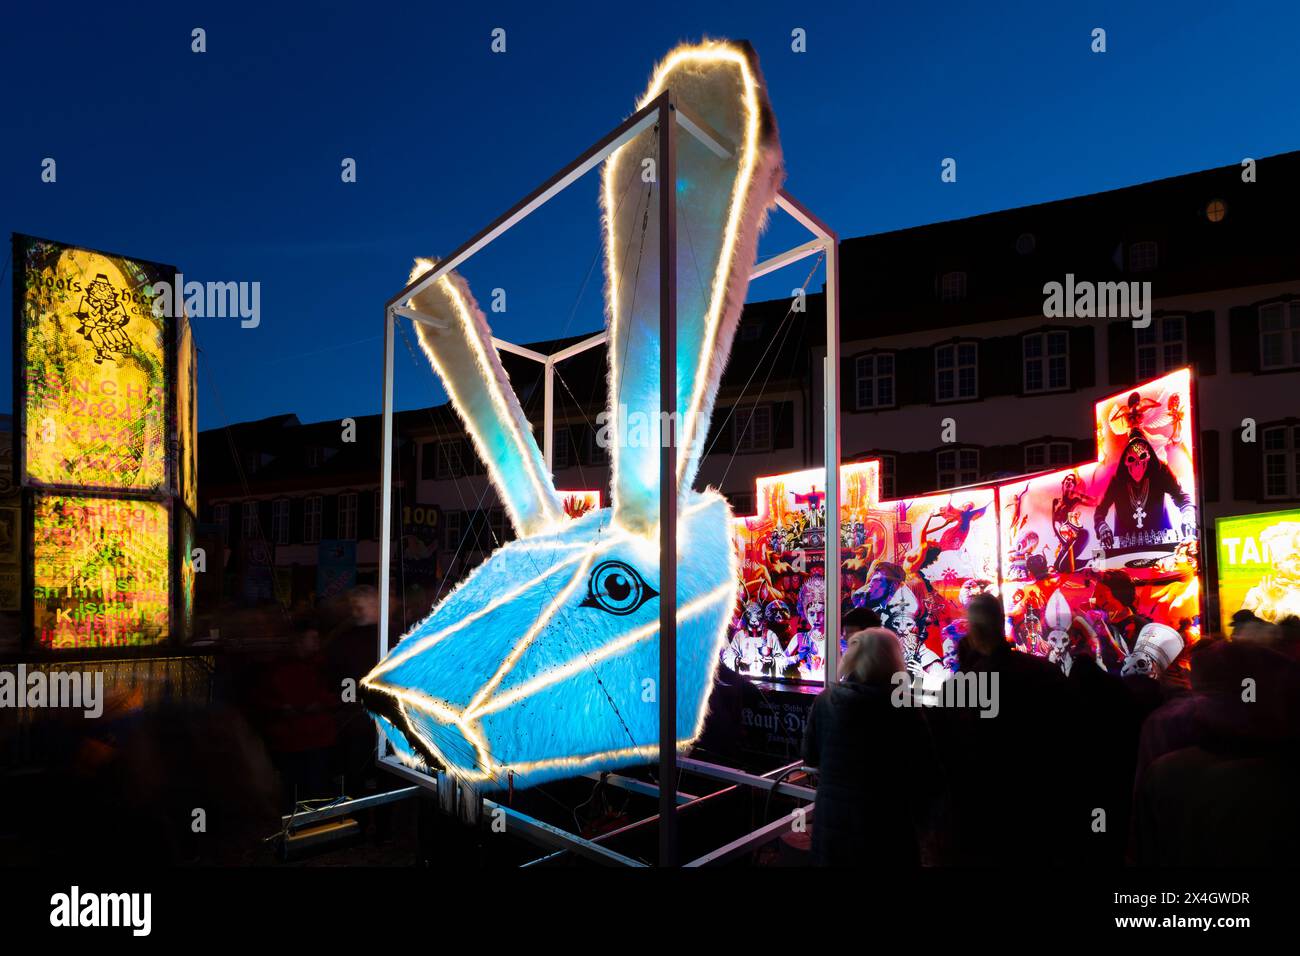 Bâle, Suisse - 20 février 24. Lanterne de carnaval lapin bleu illuminé Banque D'Images